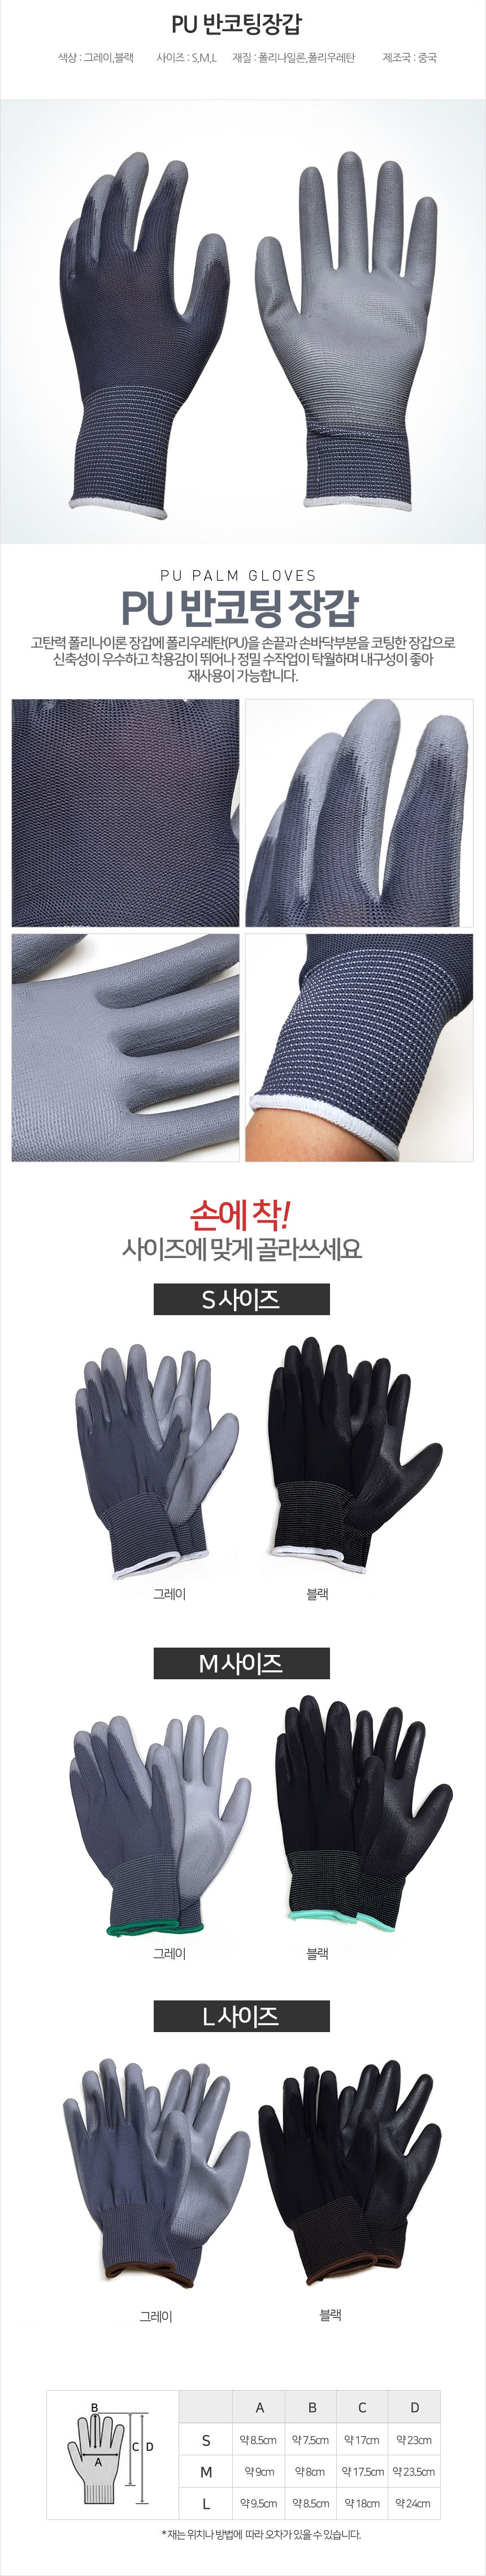 pu-gloves.jpg